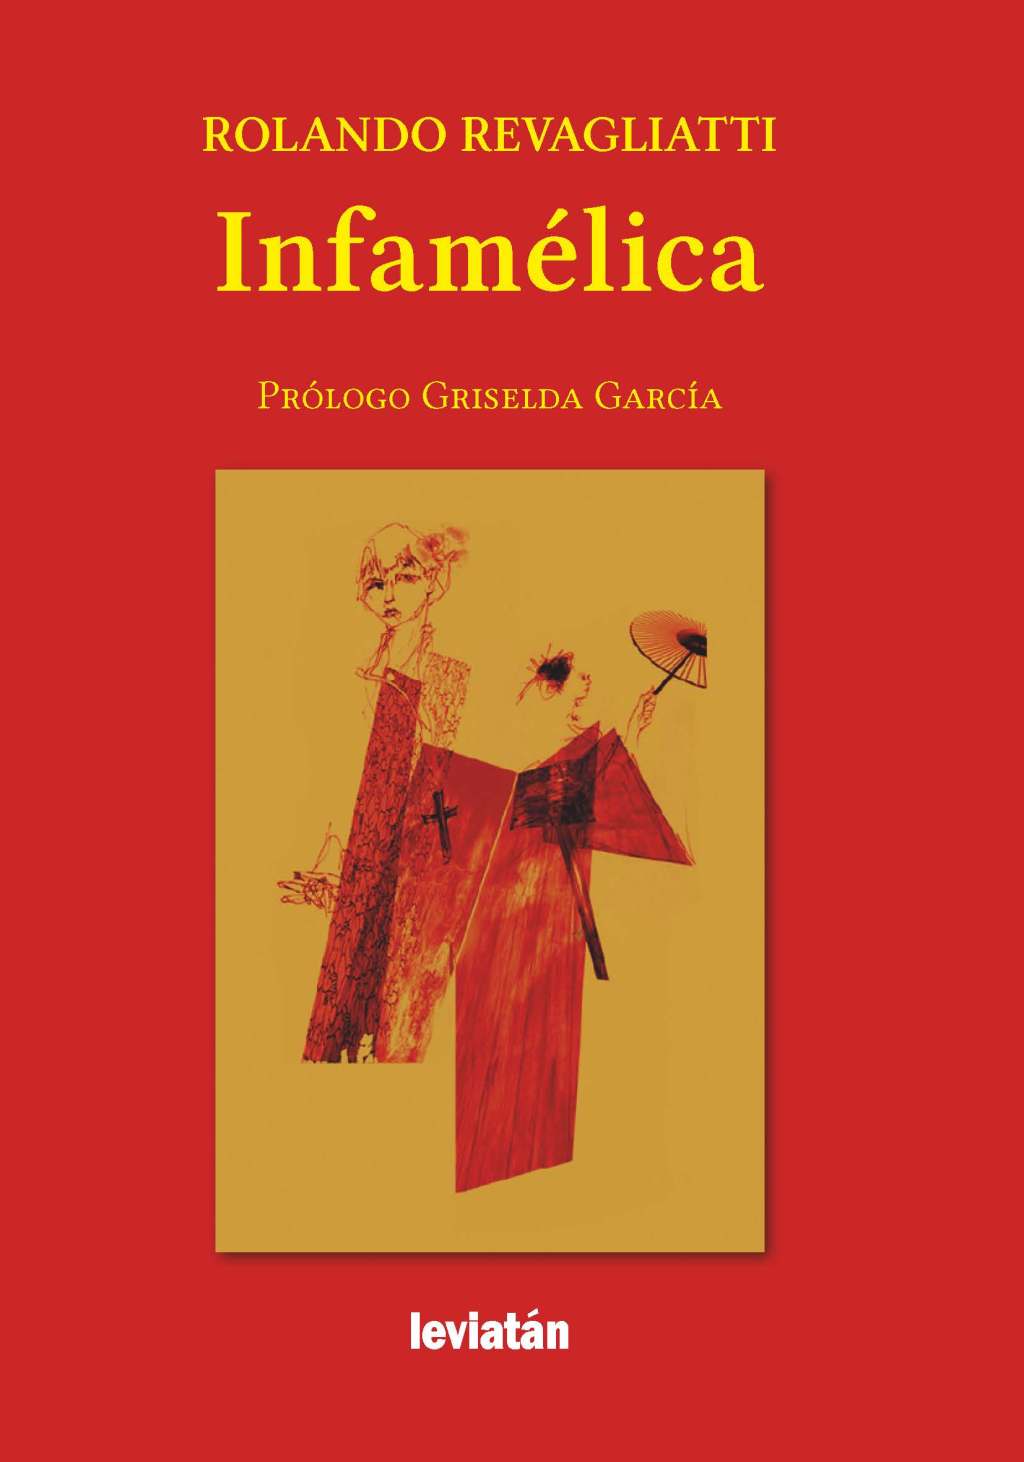 “Infamélica” de Rolando Revagliatti, por Irma Verolín